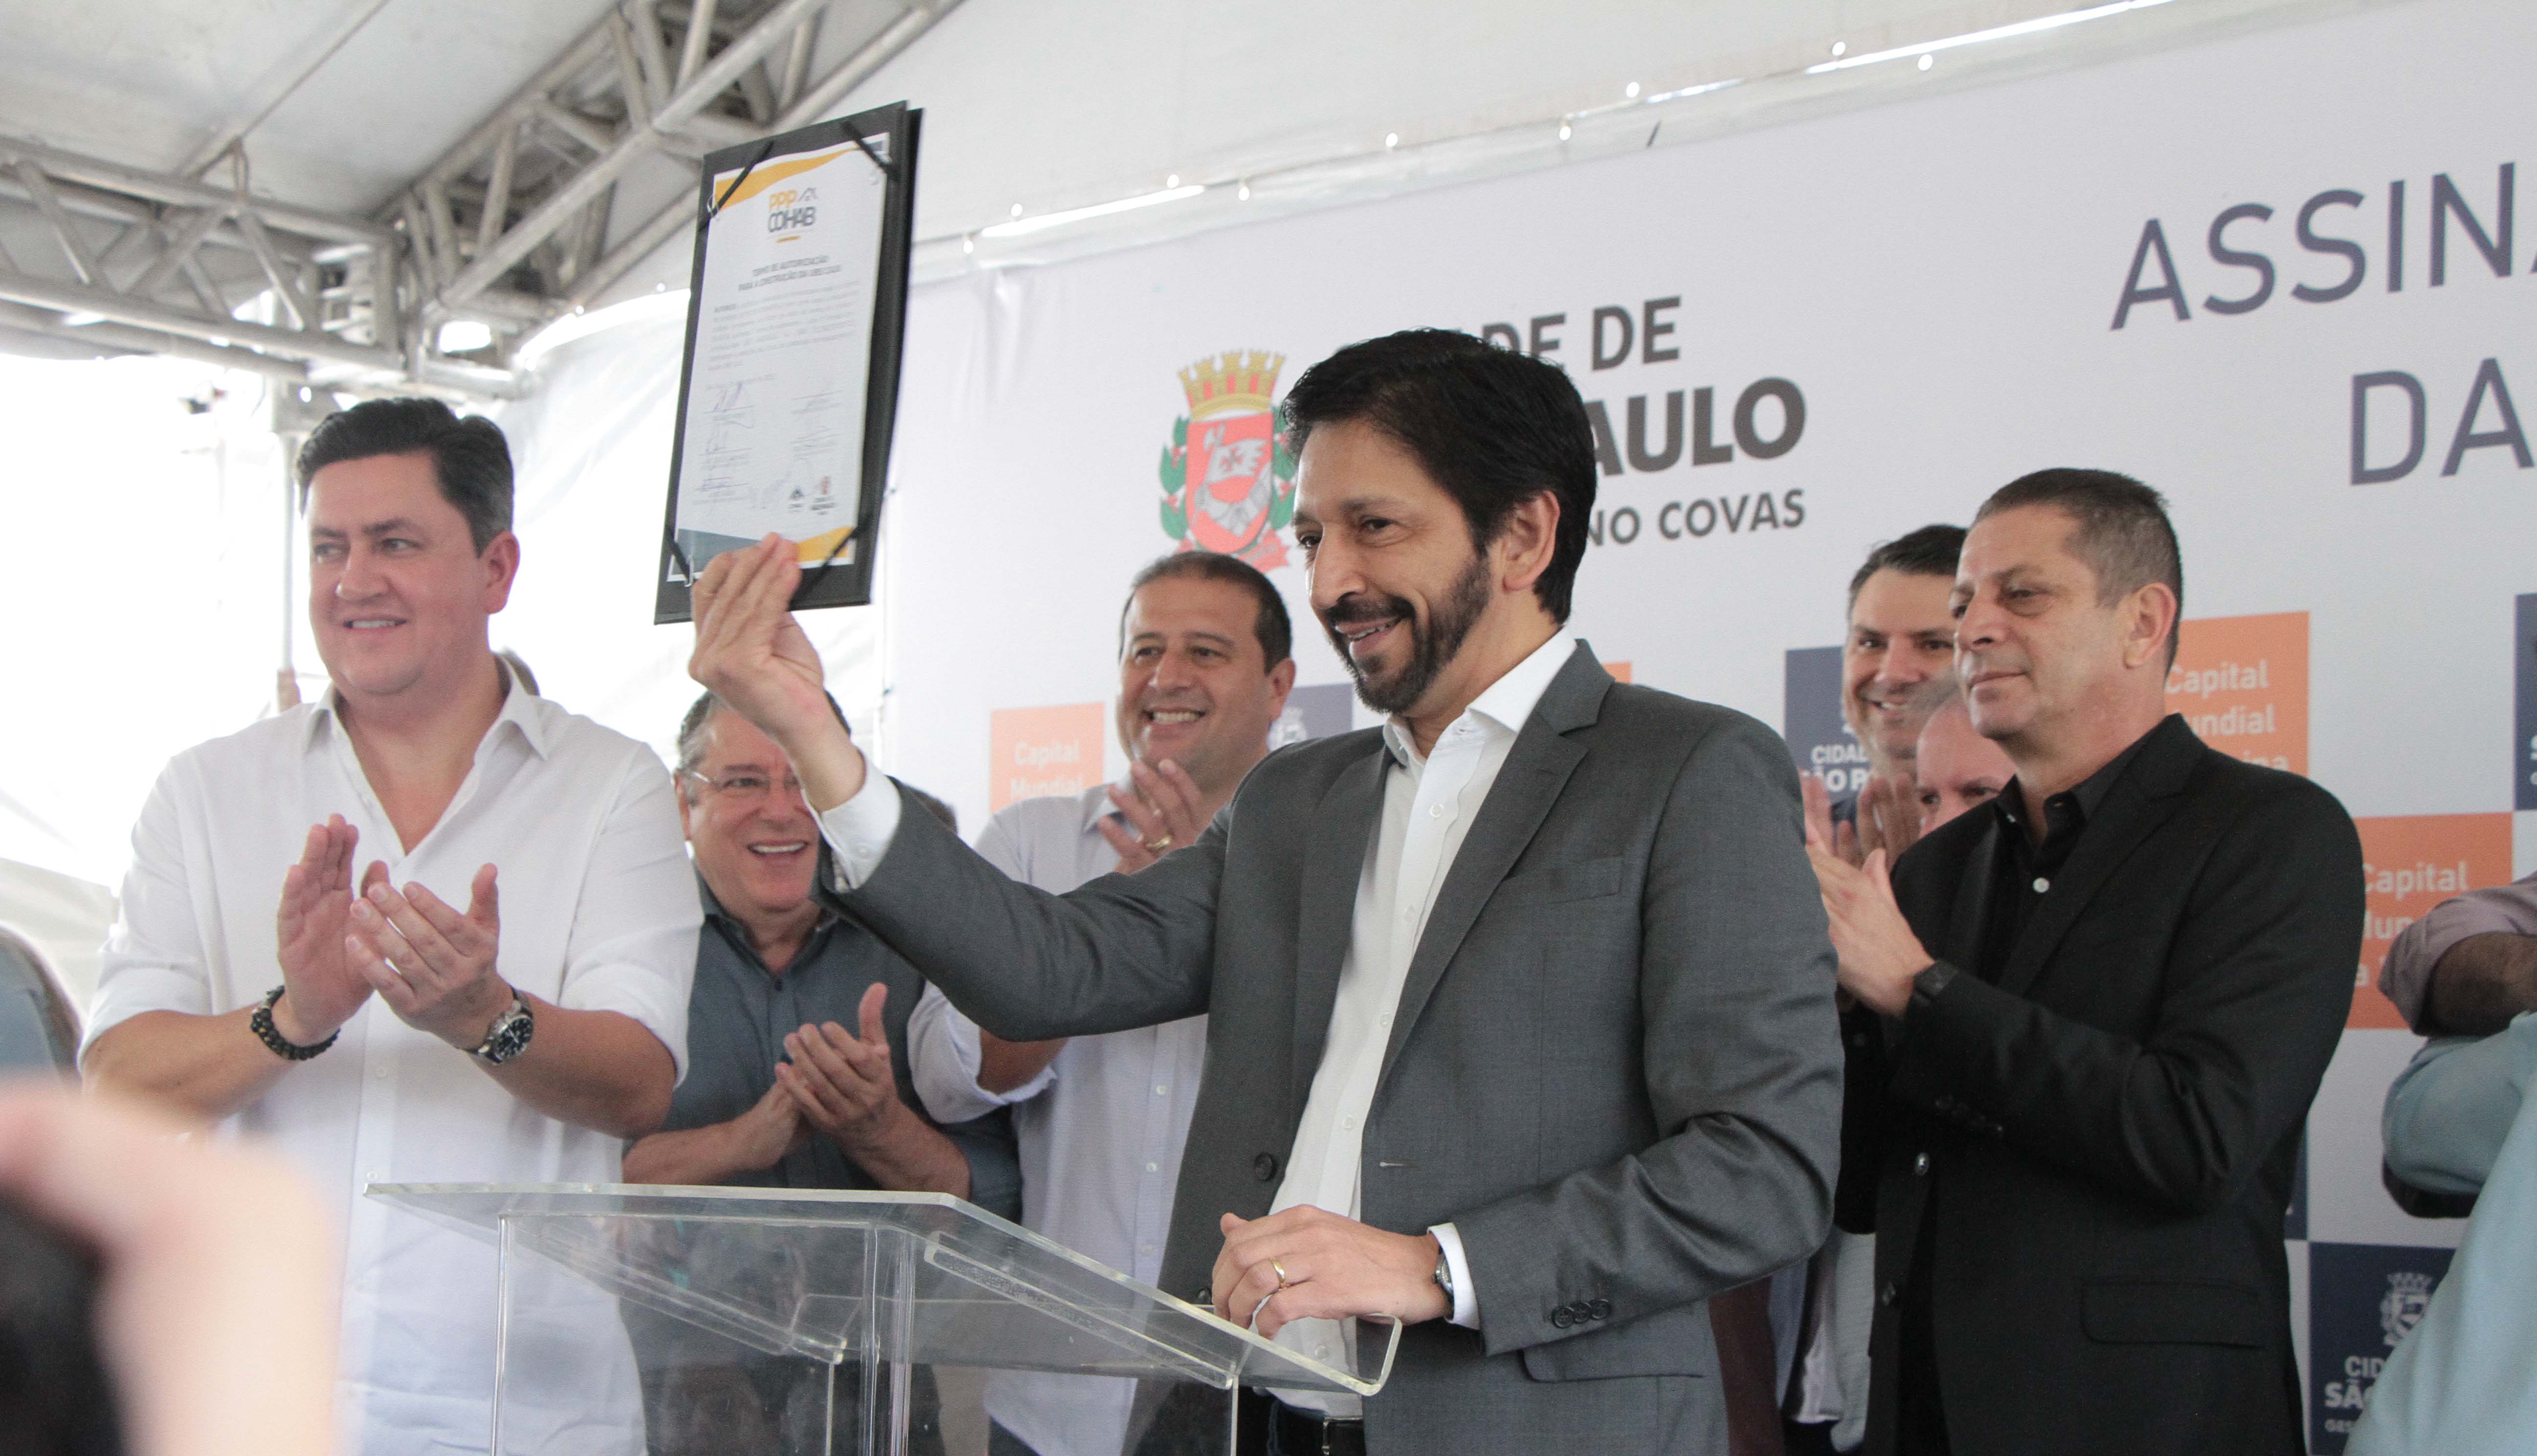 Prefeito Ricardo Nunes mostra o documento assinado pelas autoridades para o público presente